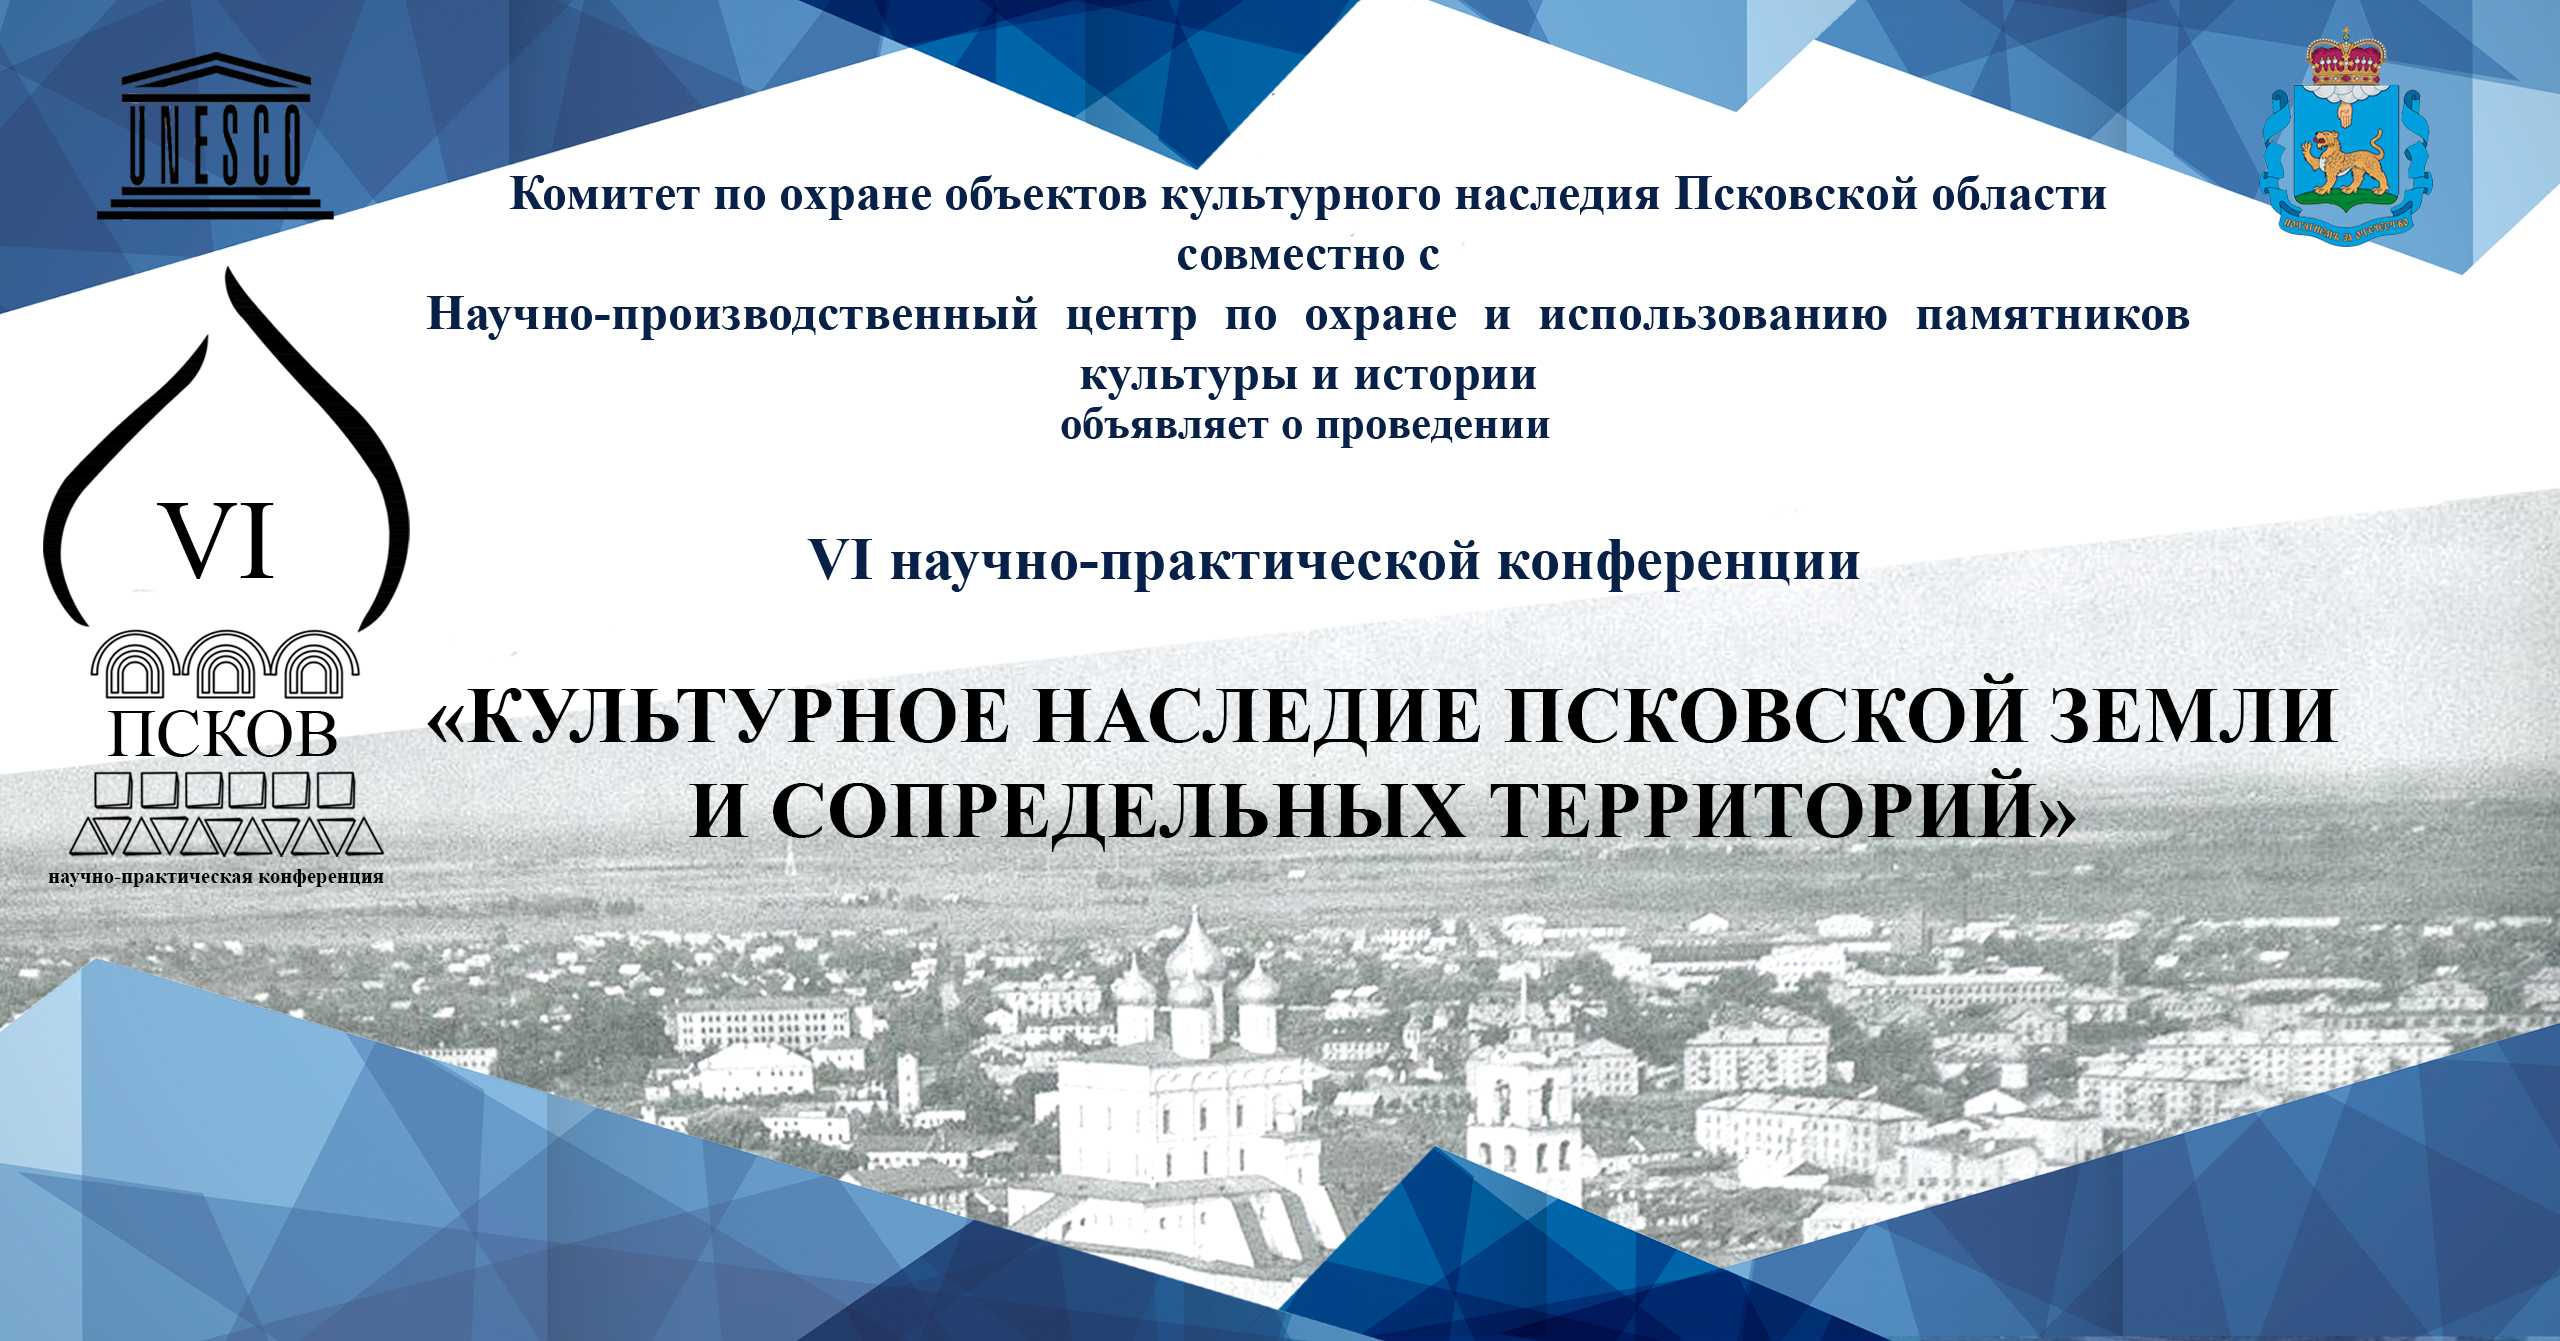 Научно-производственный центр приглашает принять участие в VI научно-практической конференции "Культурное наследие Псковской земли и сопредельных территорий"